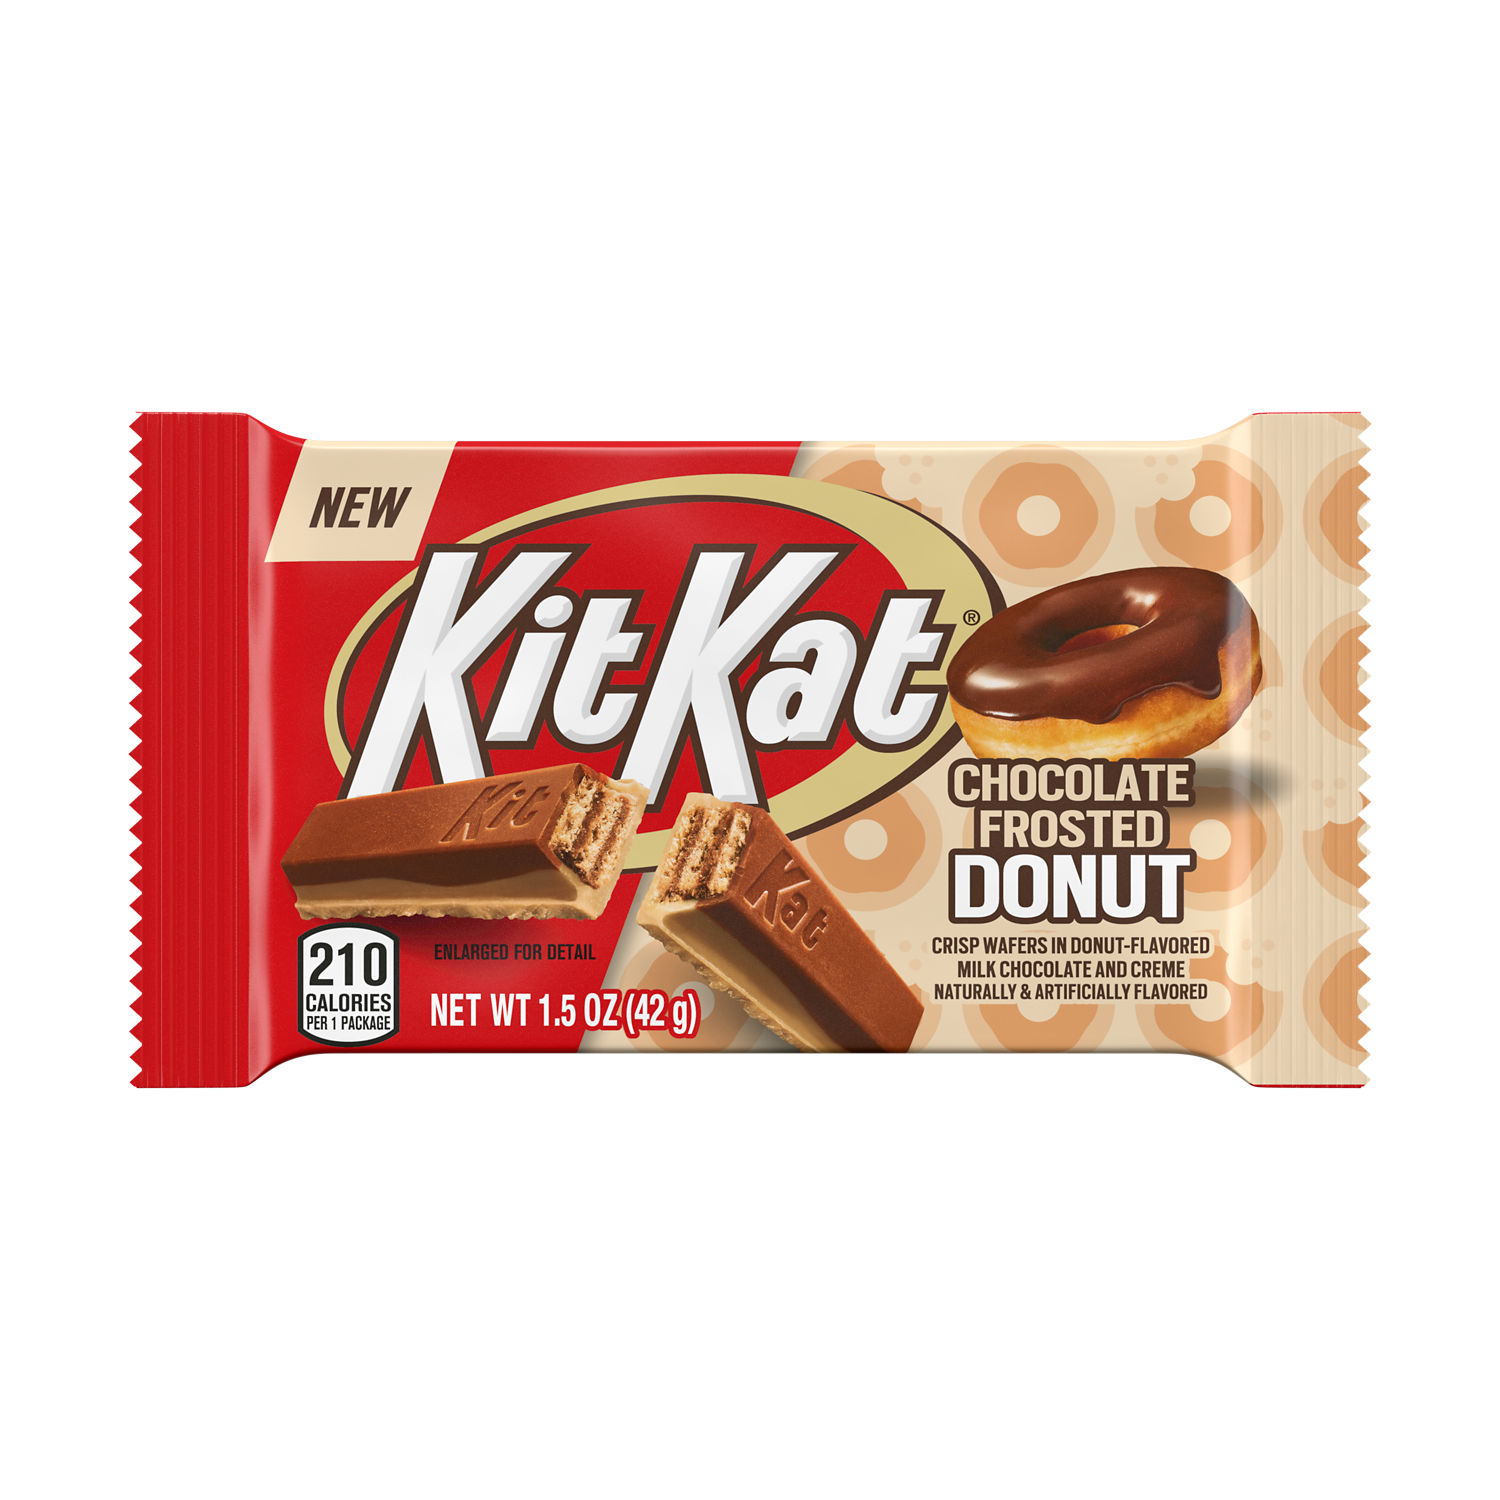 KitKat chocolate brand